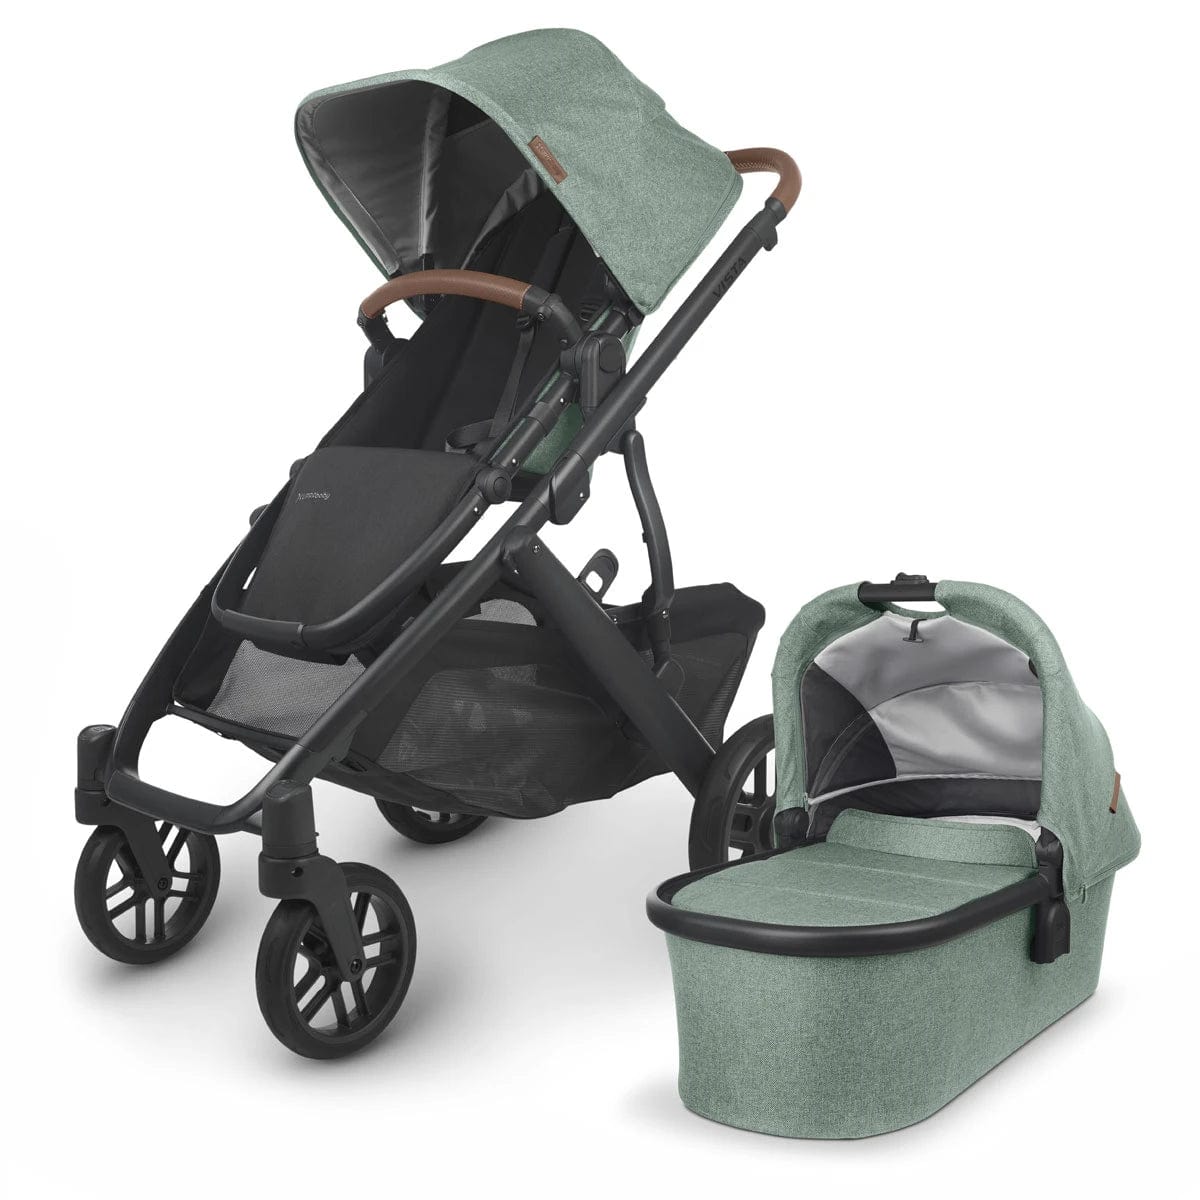 UPPAbaby stroller UPPAbaby VISTA V2 Stroller - Gwen (Green Melange/Carbon/Saddle Leather)